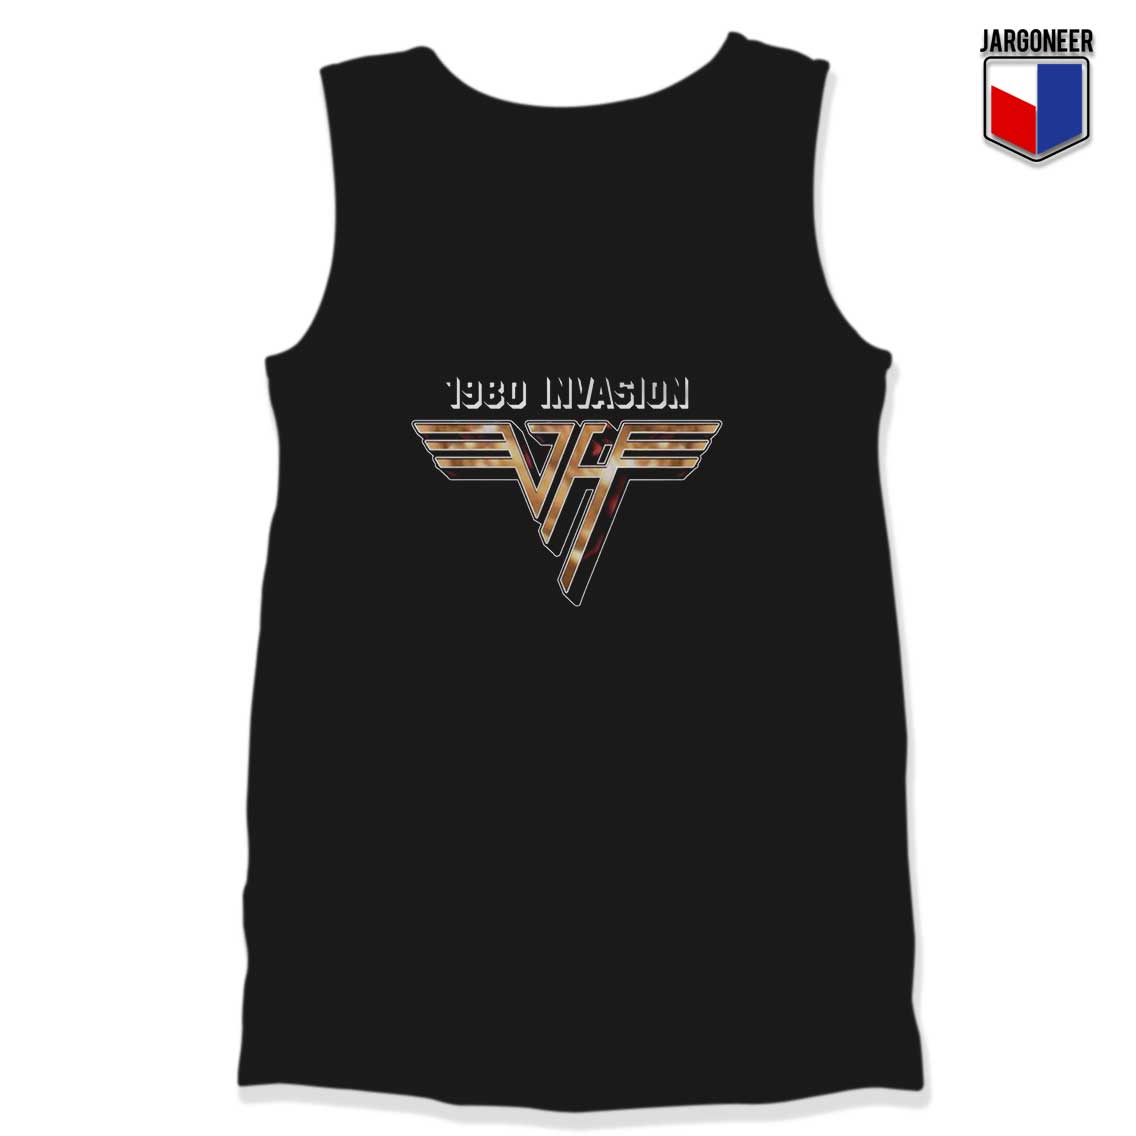 Van Halen 1980 Invasion Unisex Adult Tank Top - Shop Unique Graphic Cool Shirt Designs